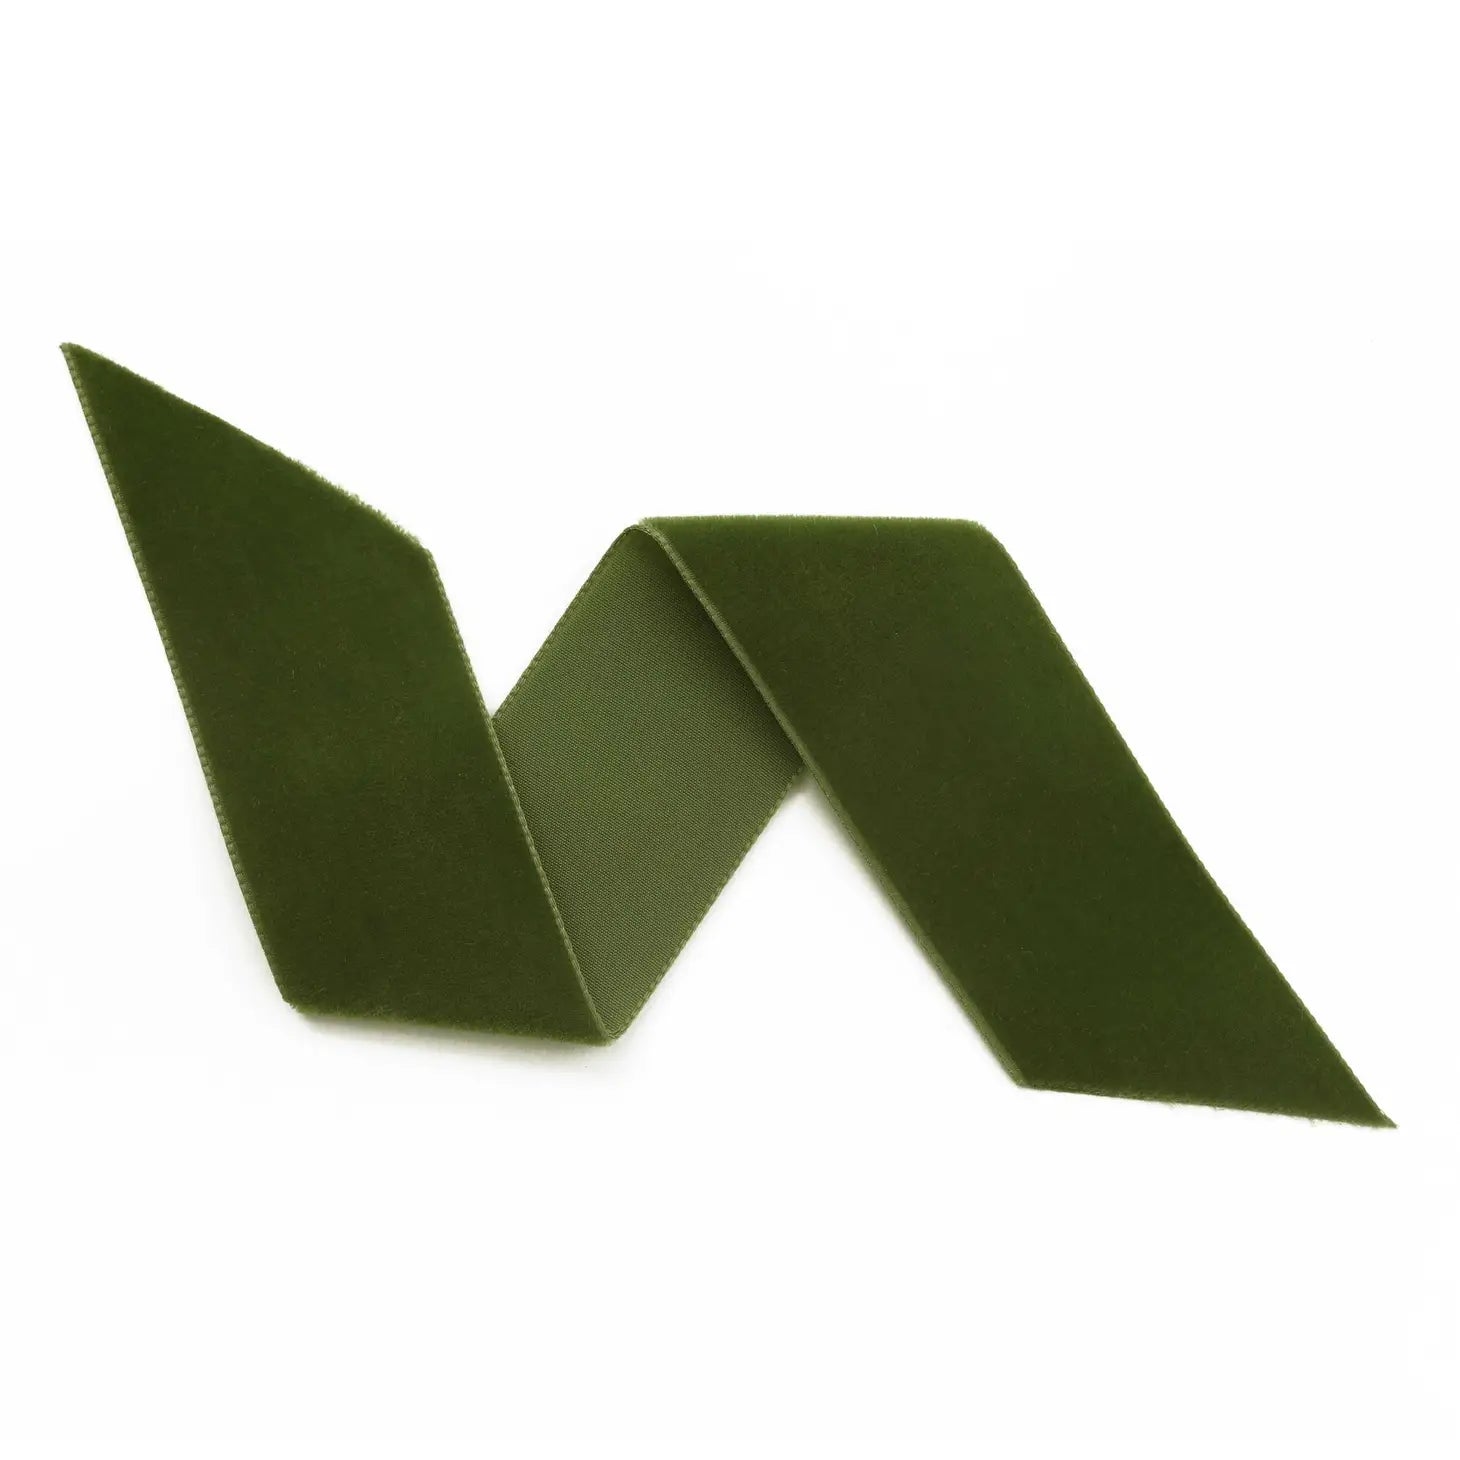 Gift Wrap Boxes - Small Box, Moss Green Ribbon by K. A. Artist Shop - K. A. Artist Shop